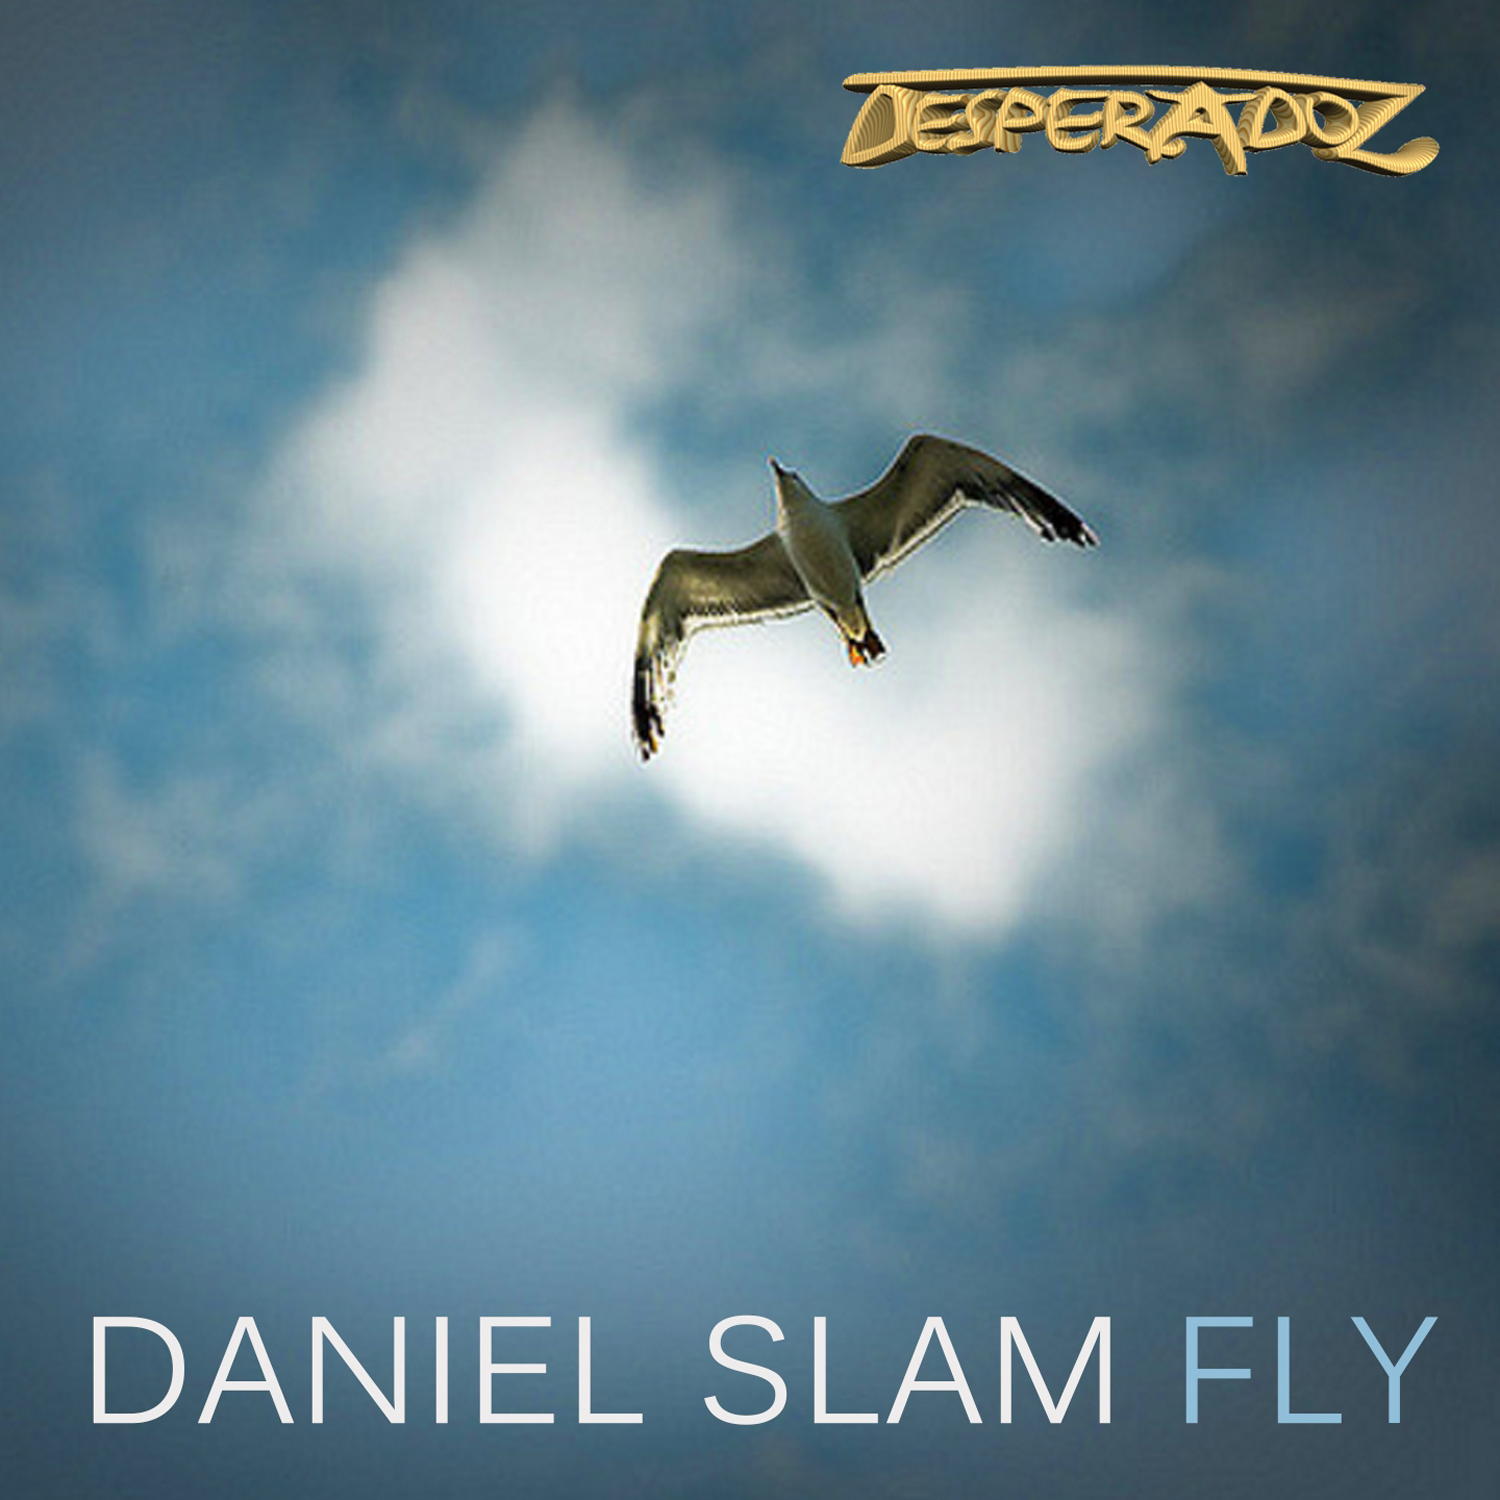 Daniel Slam